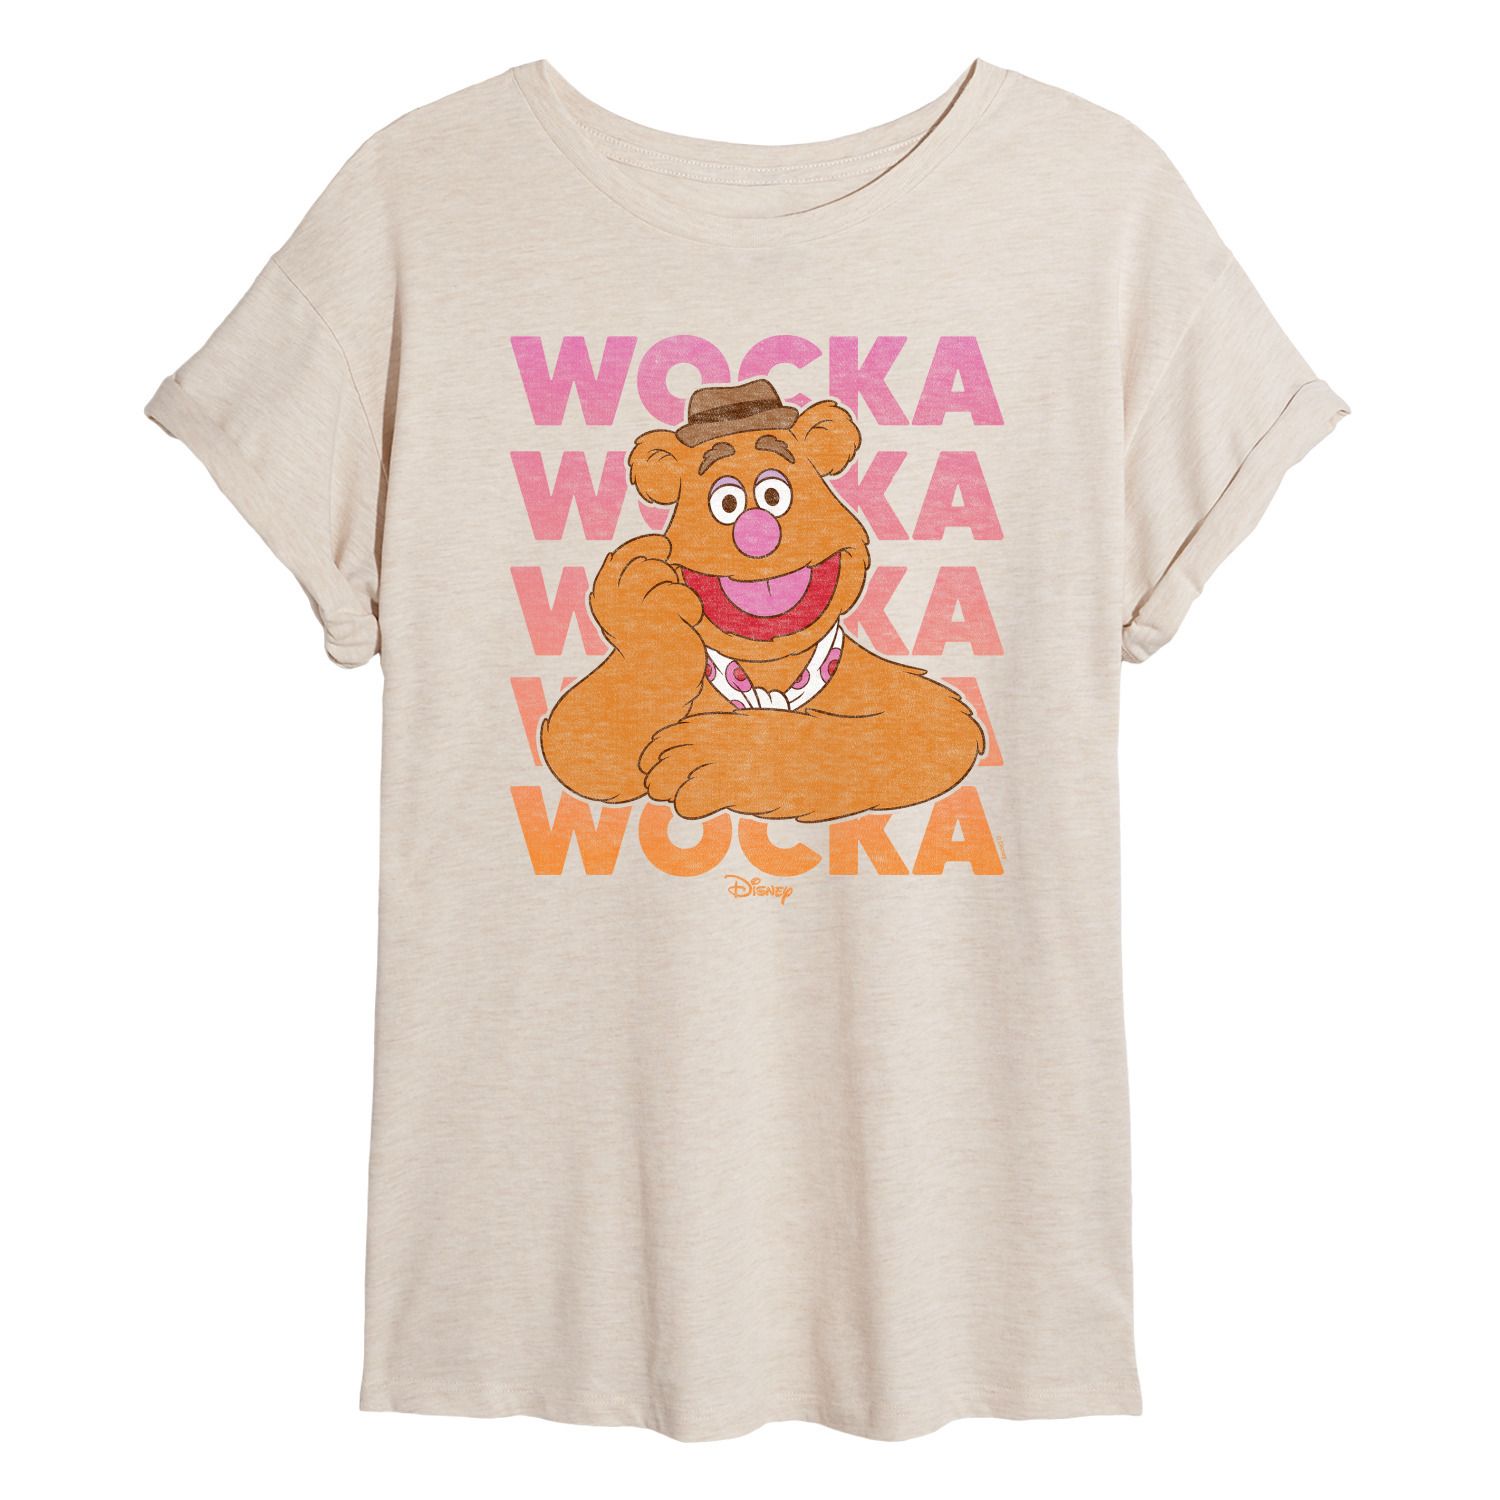 Струящаяся футболка Wocka Wocka от Disney's The Muppets Juniors Licensed Character